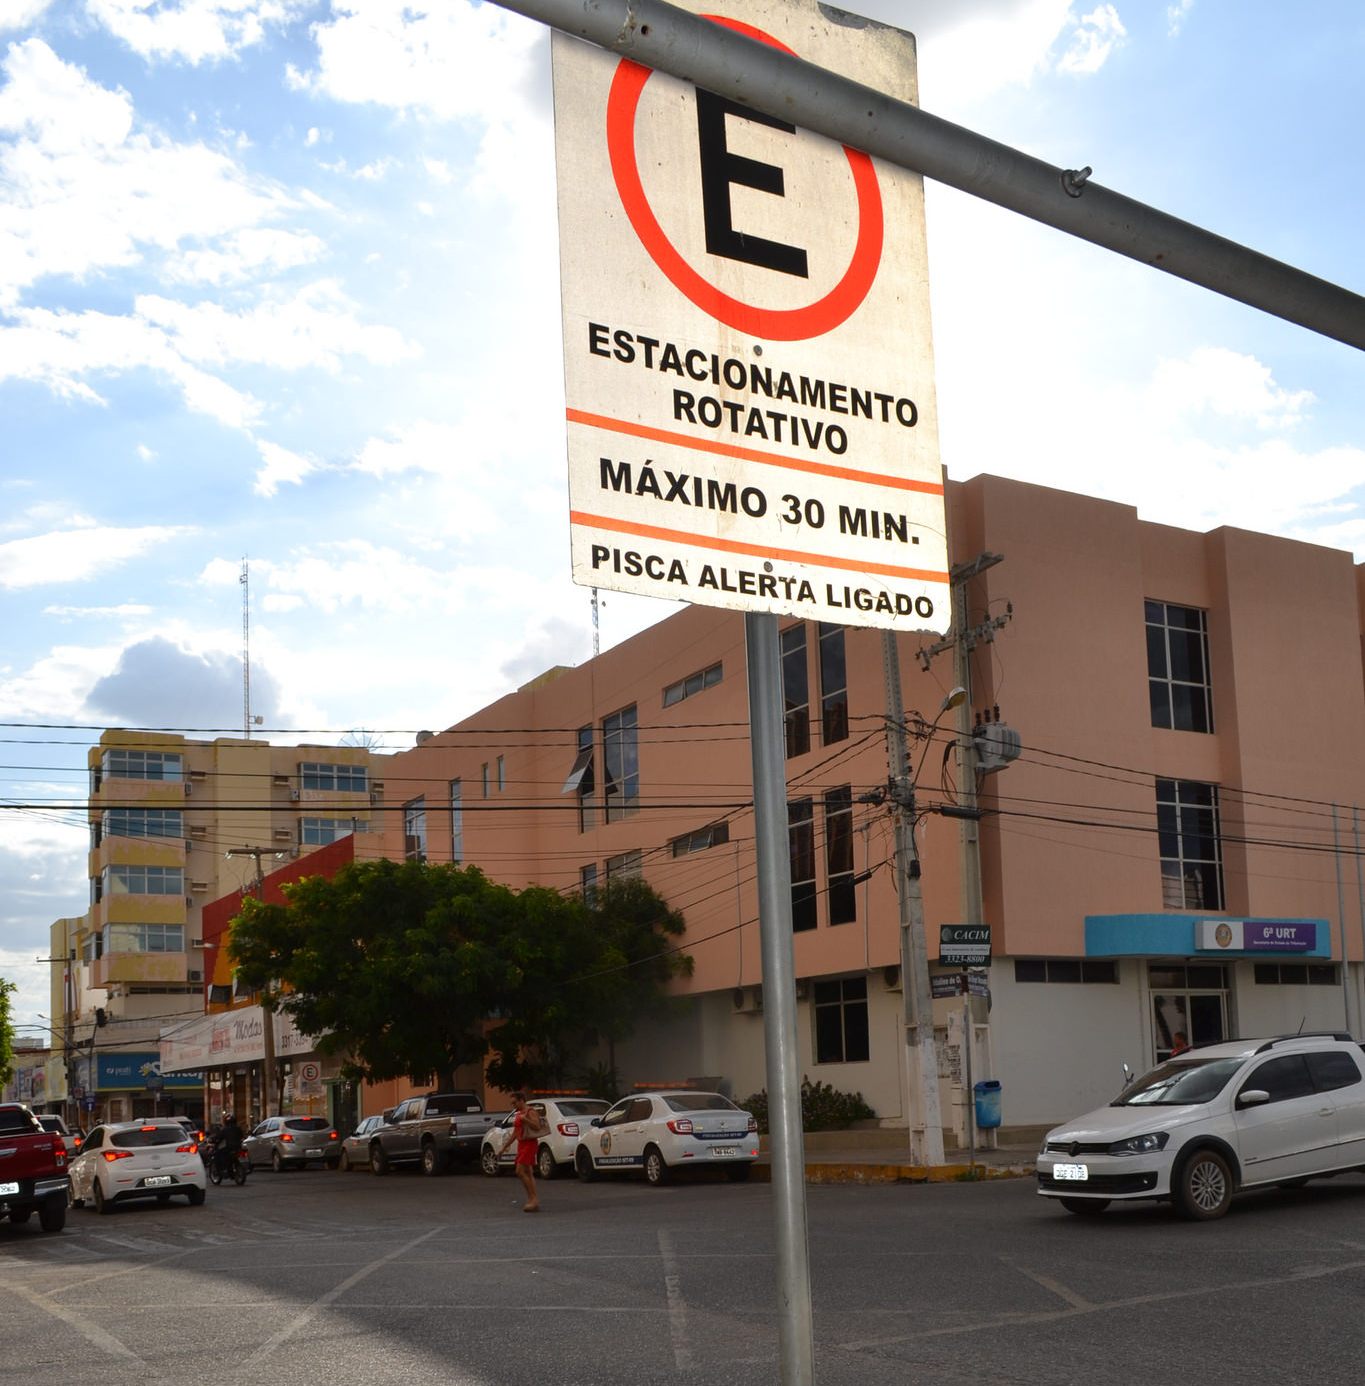 Sistema de Estacionamento Rotativo cria cerca de 4 mil vagas no centro de Mossoró